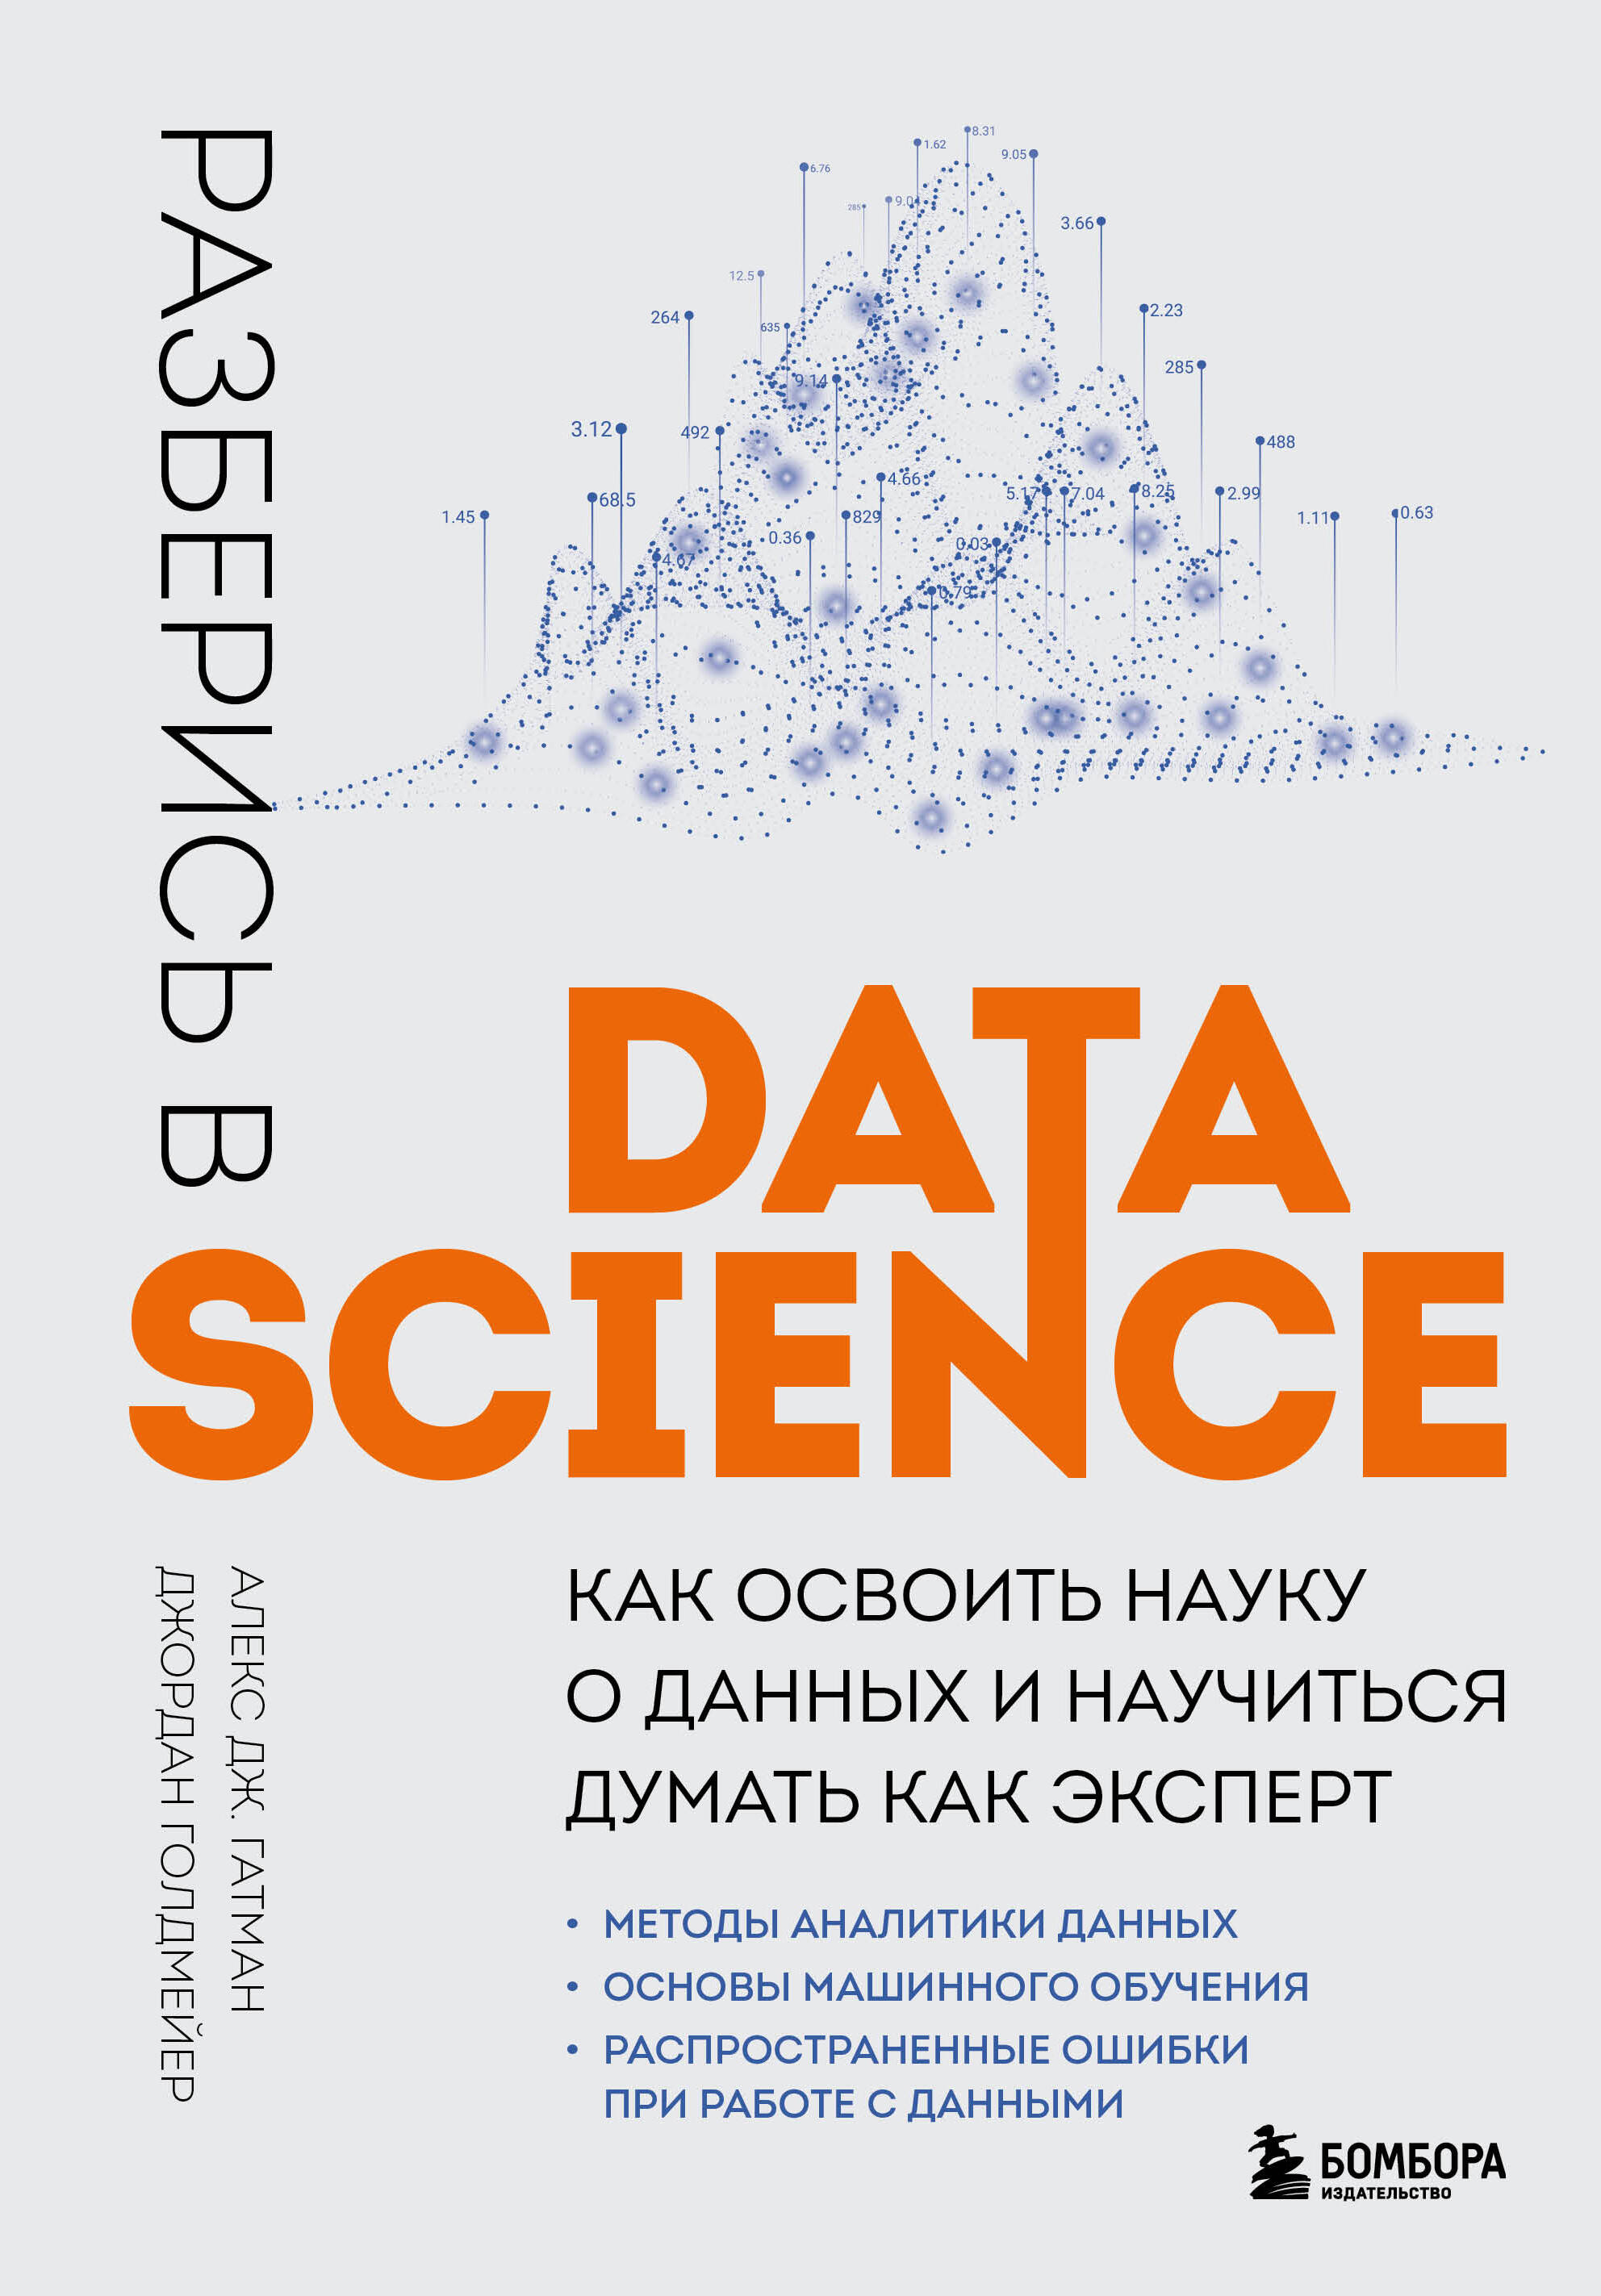 бакалавриат аналитика и data science Гатман Алекс Дж., Голдмейер Джордан Разберись в Data Science: как освоить науку о данных и научиться думать как эксперт